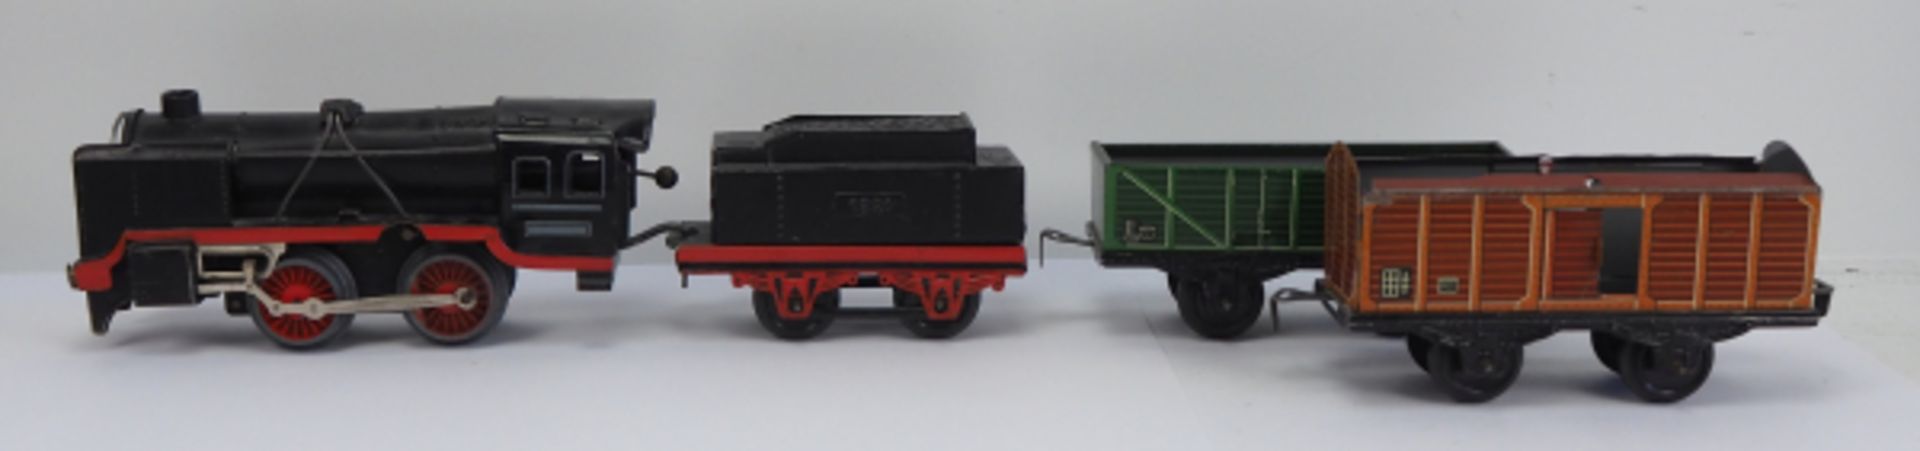 Blech-Eisenbahn.Lokomotive mit Tender sowie zwei Wagons.Zustand: II